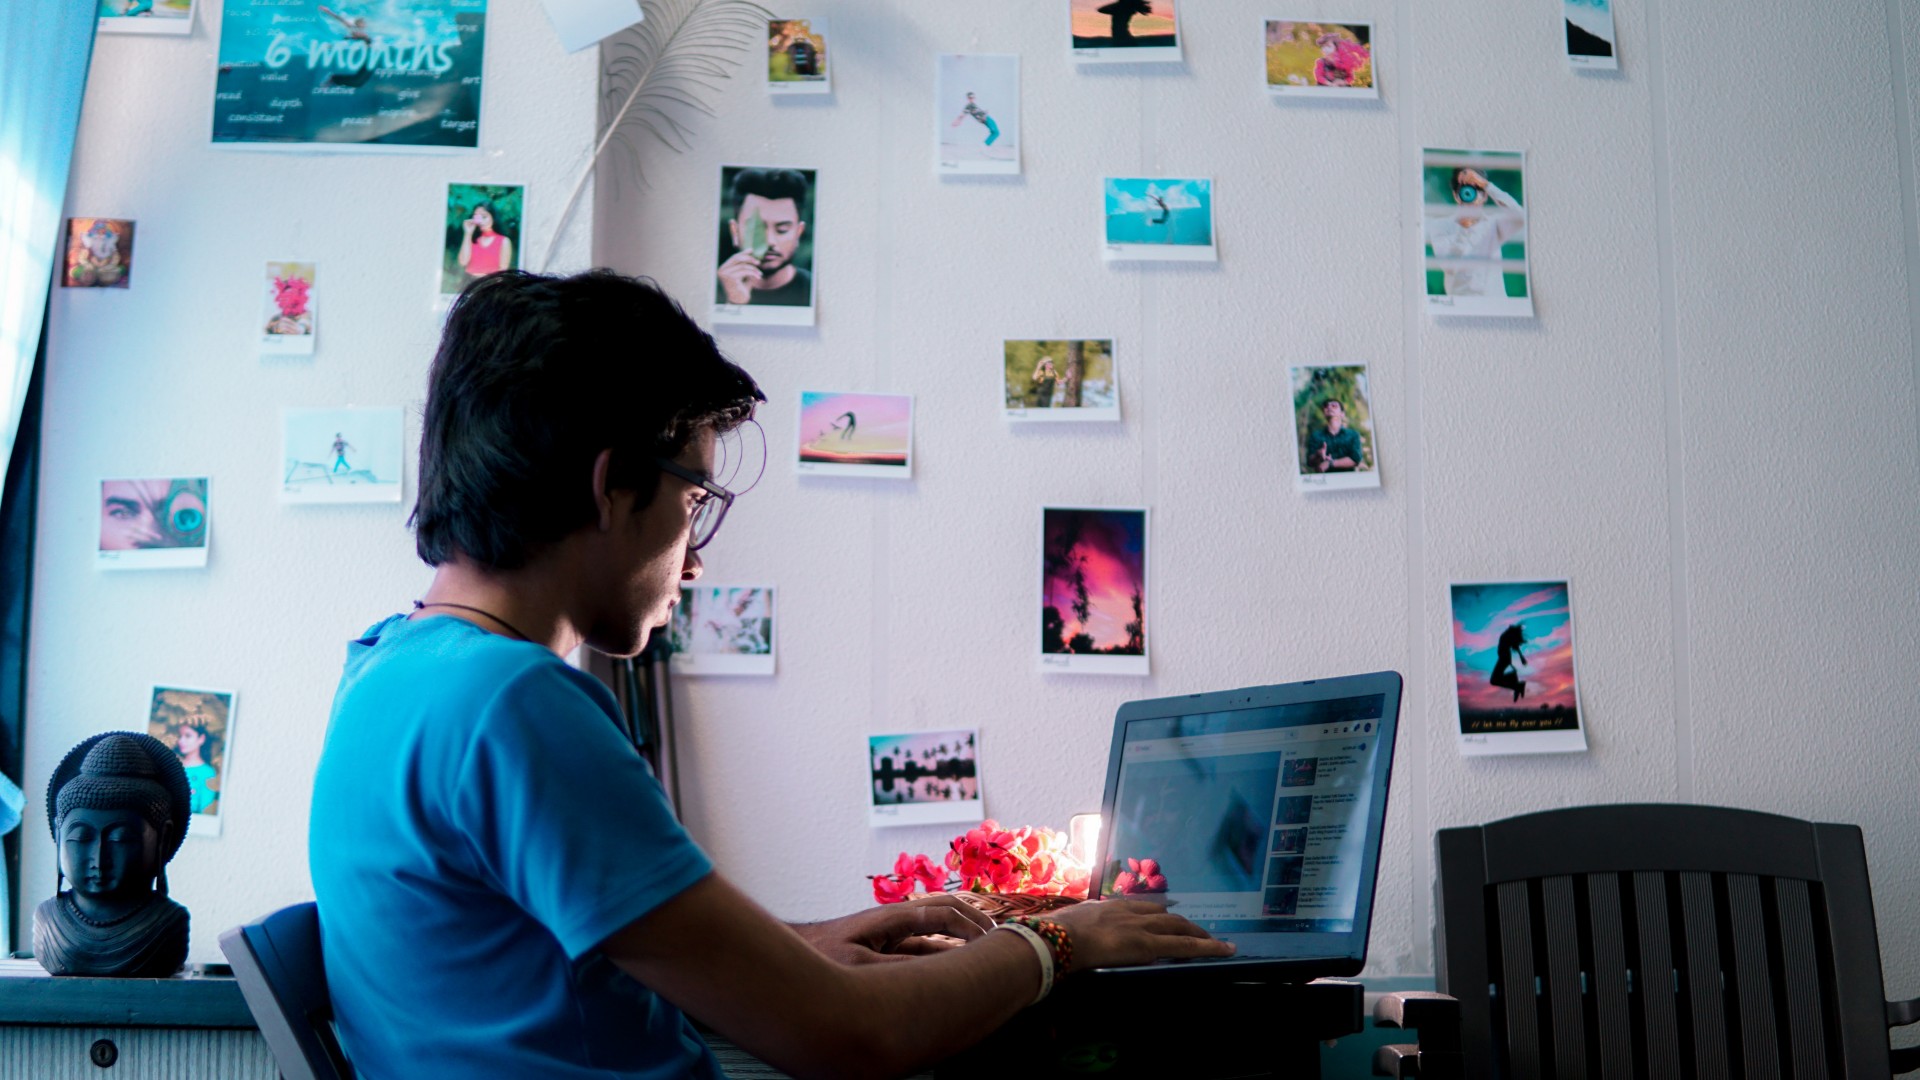 Man wearing a blue shirt sitting at his computer; Photo by Kaushal Moradiya from Pexels